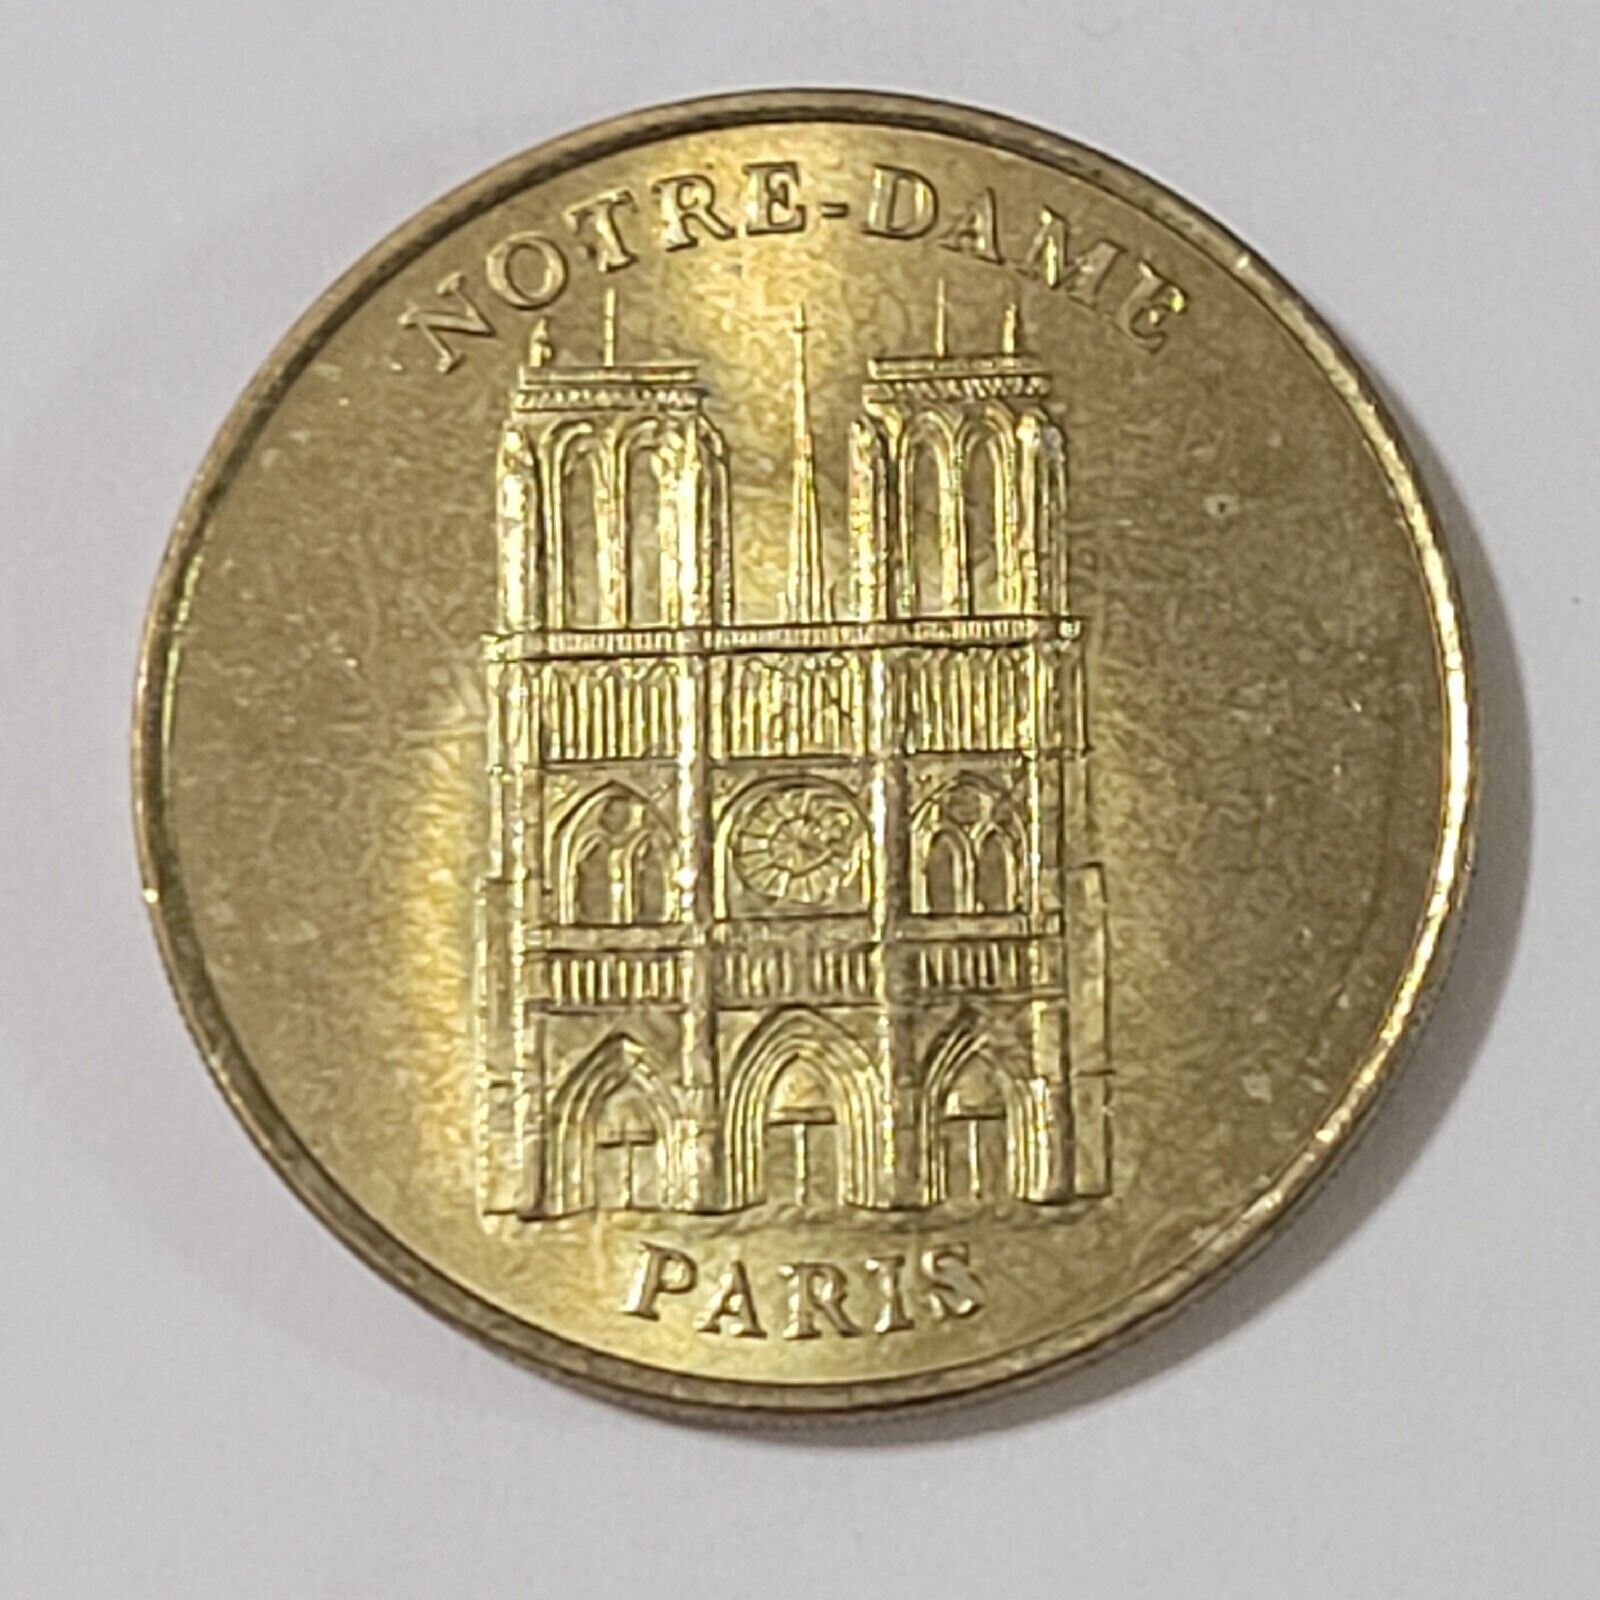 NOTRE DAME MONNAIE DE PARIS Coin 2000 France Collection Nationale Token